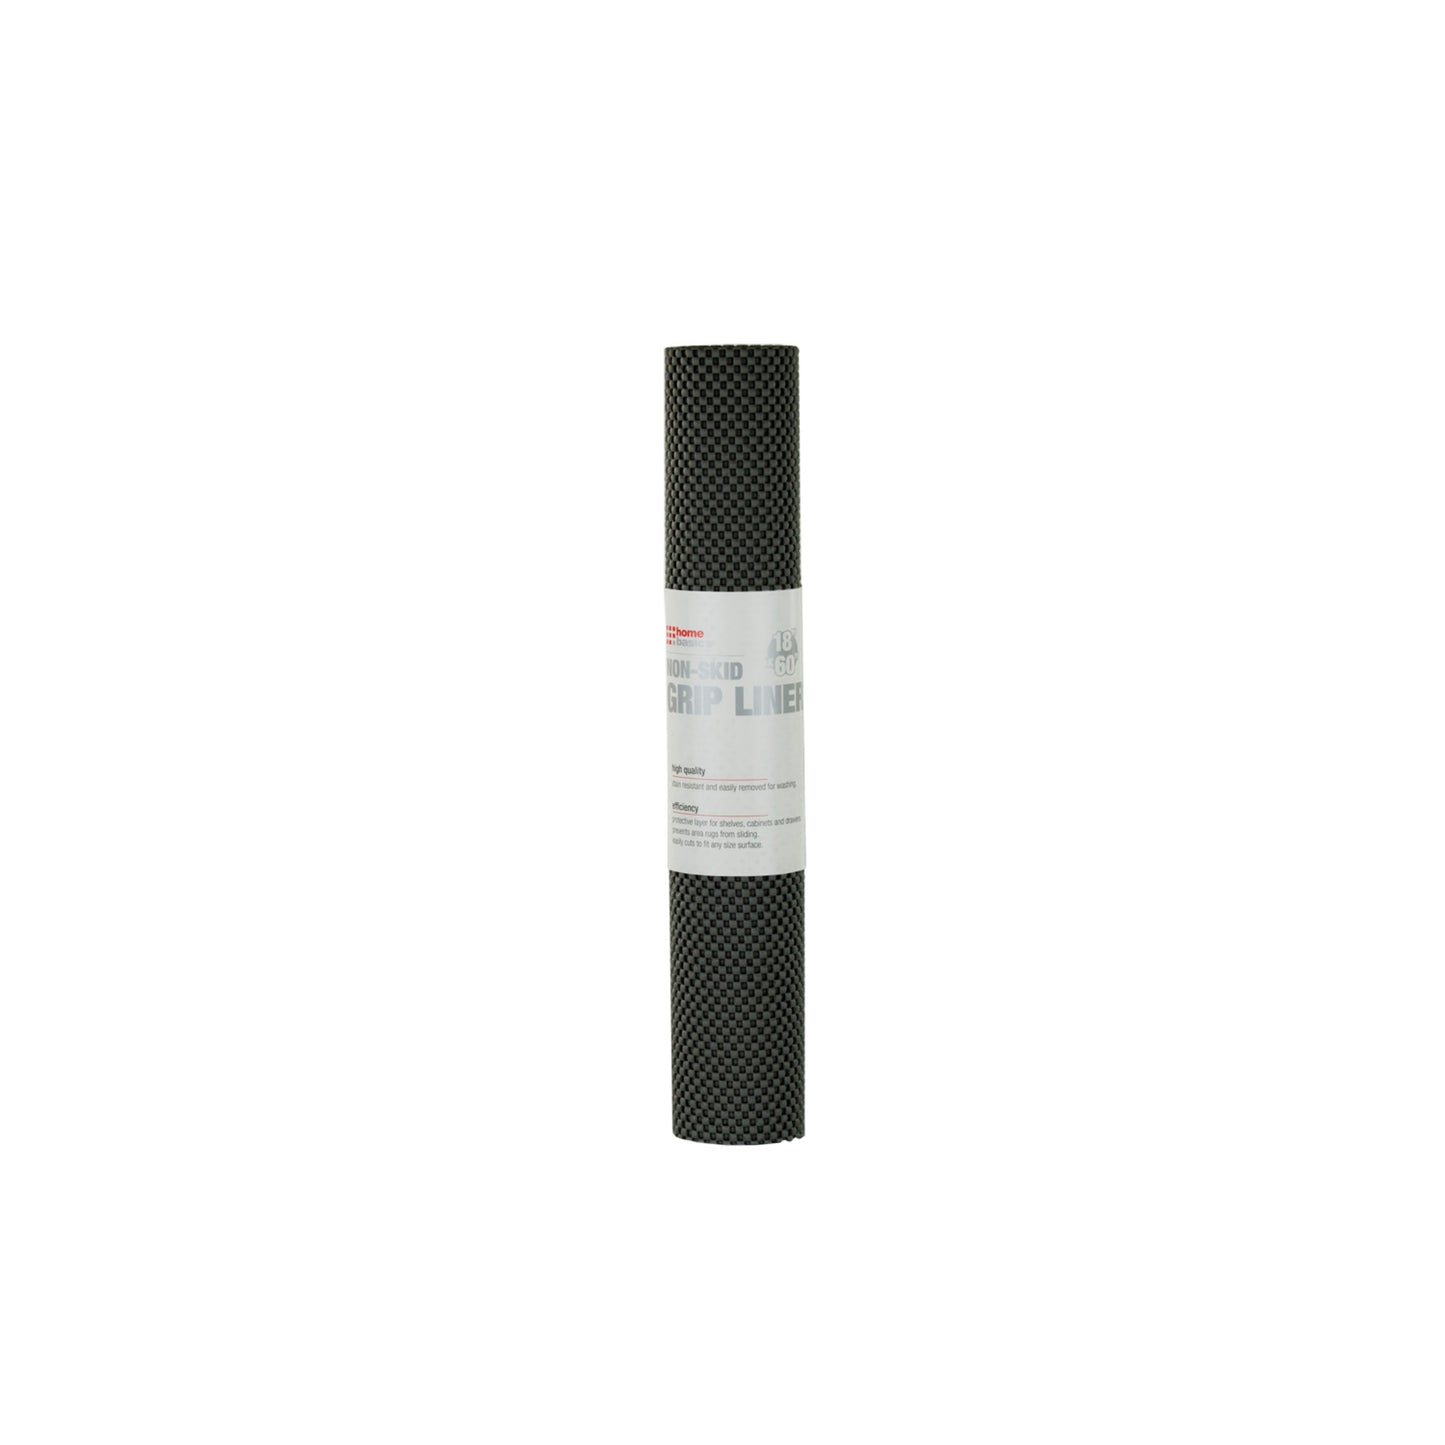 Non-Adhesive 18” x 60” Rubber Shelf Grip Liner, KITCHEN ORGANIZATION